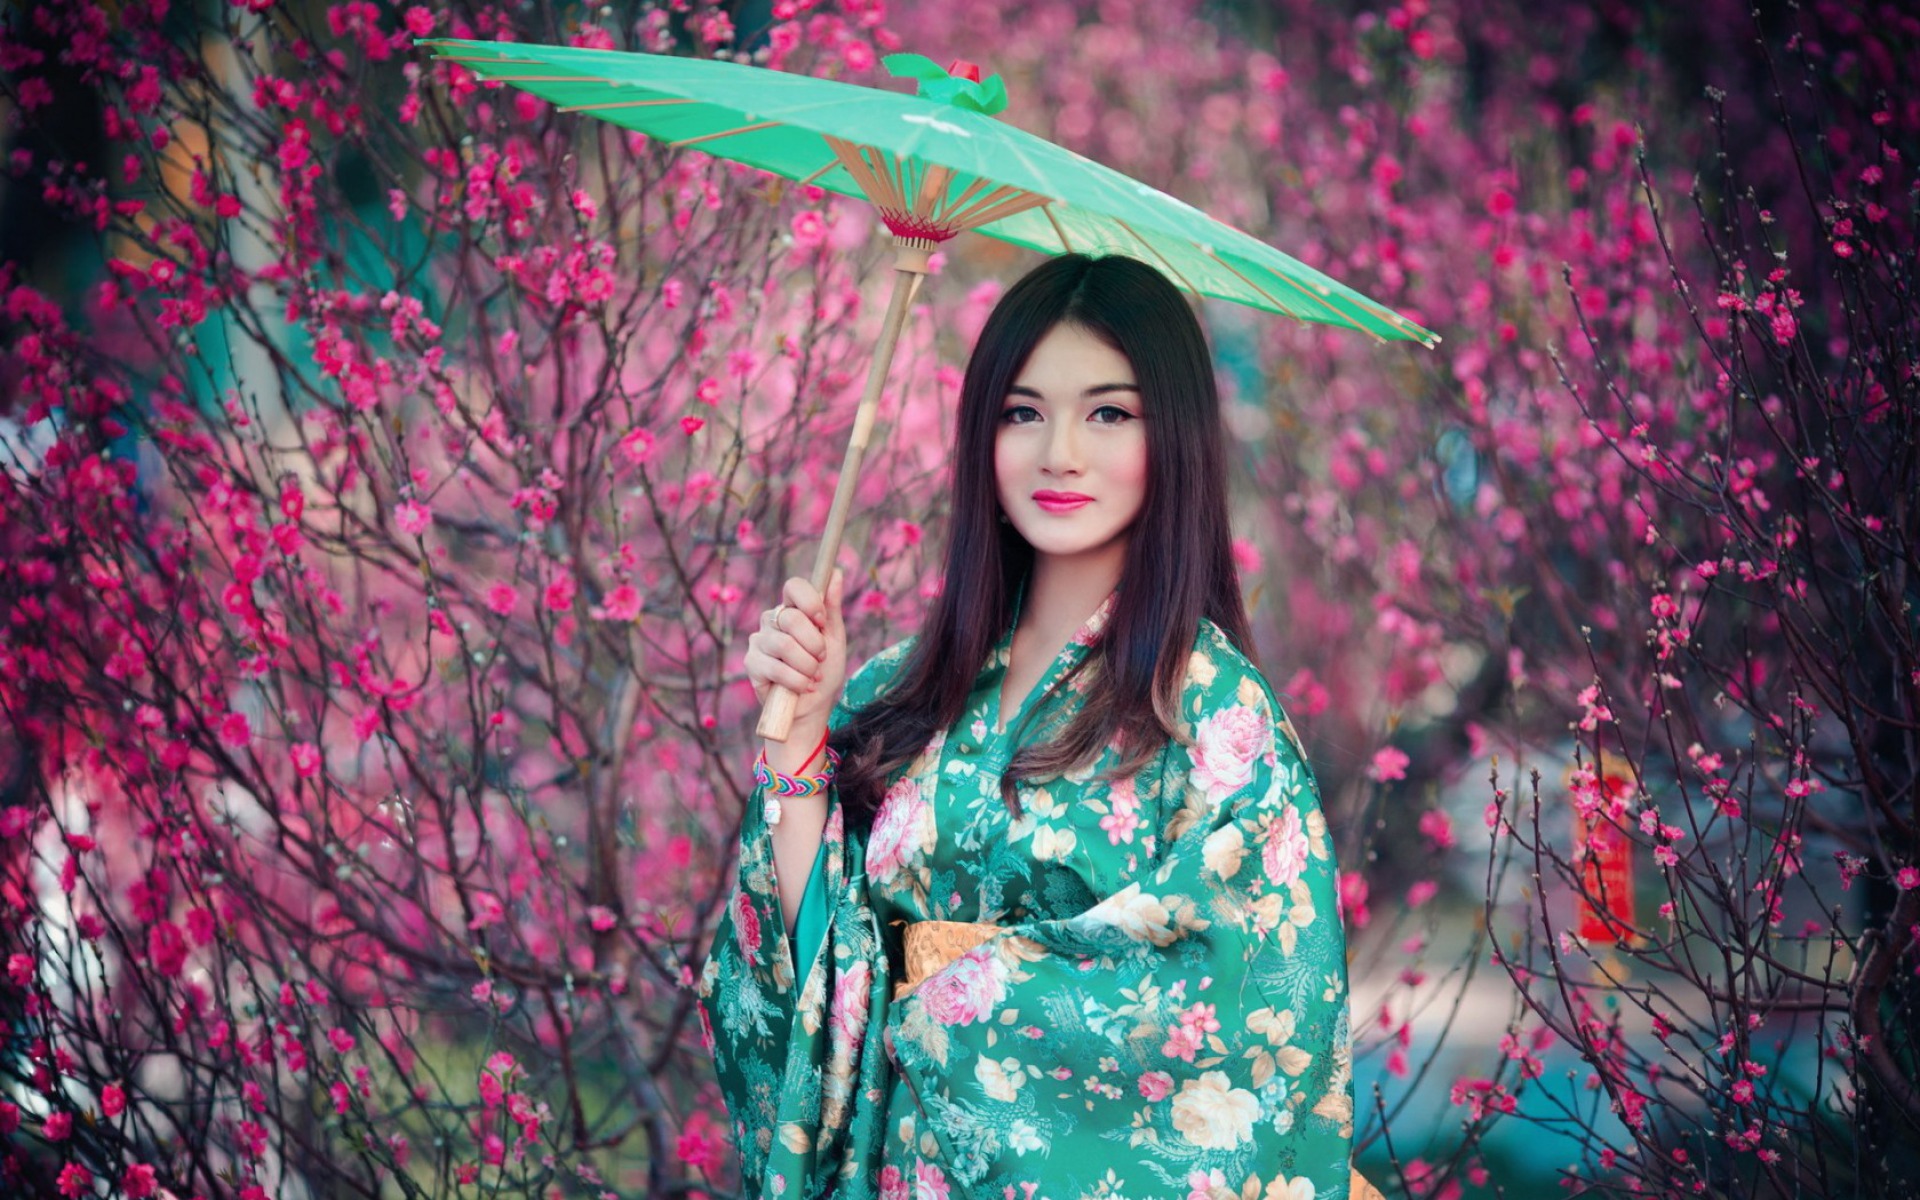 Japanese Girl In Kimono Wallpaper For Desktop X Full Hd Hot Sex Picture